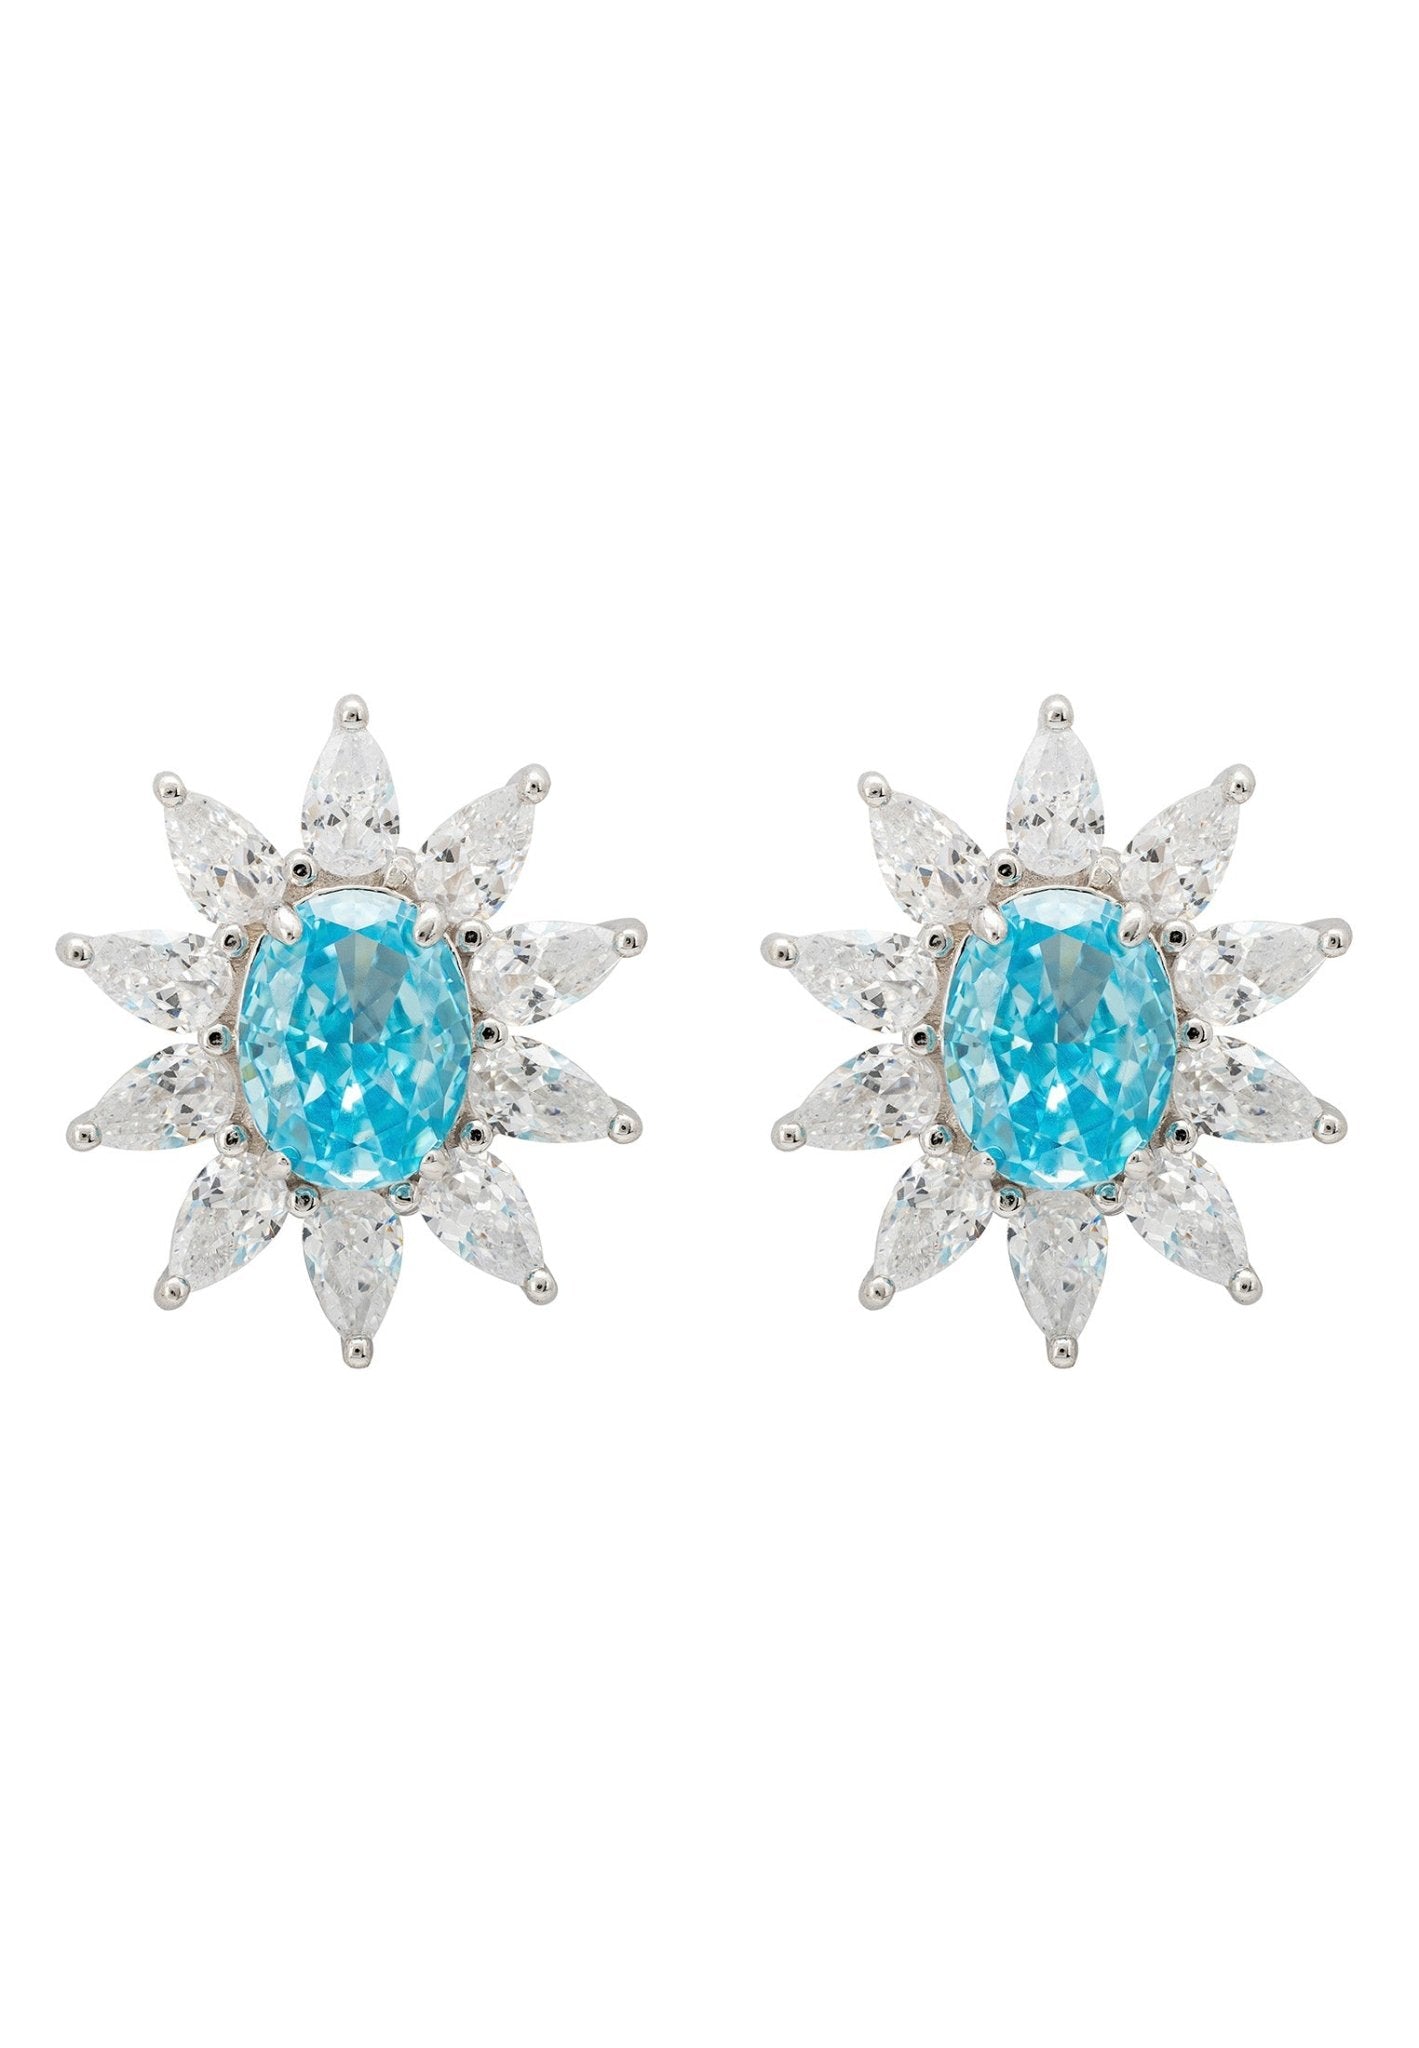 Daisy Gemstone Stud Earrings Blue Topaz Silver - LATELITA Earrings